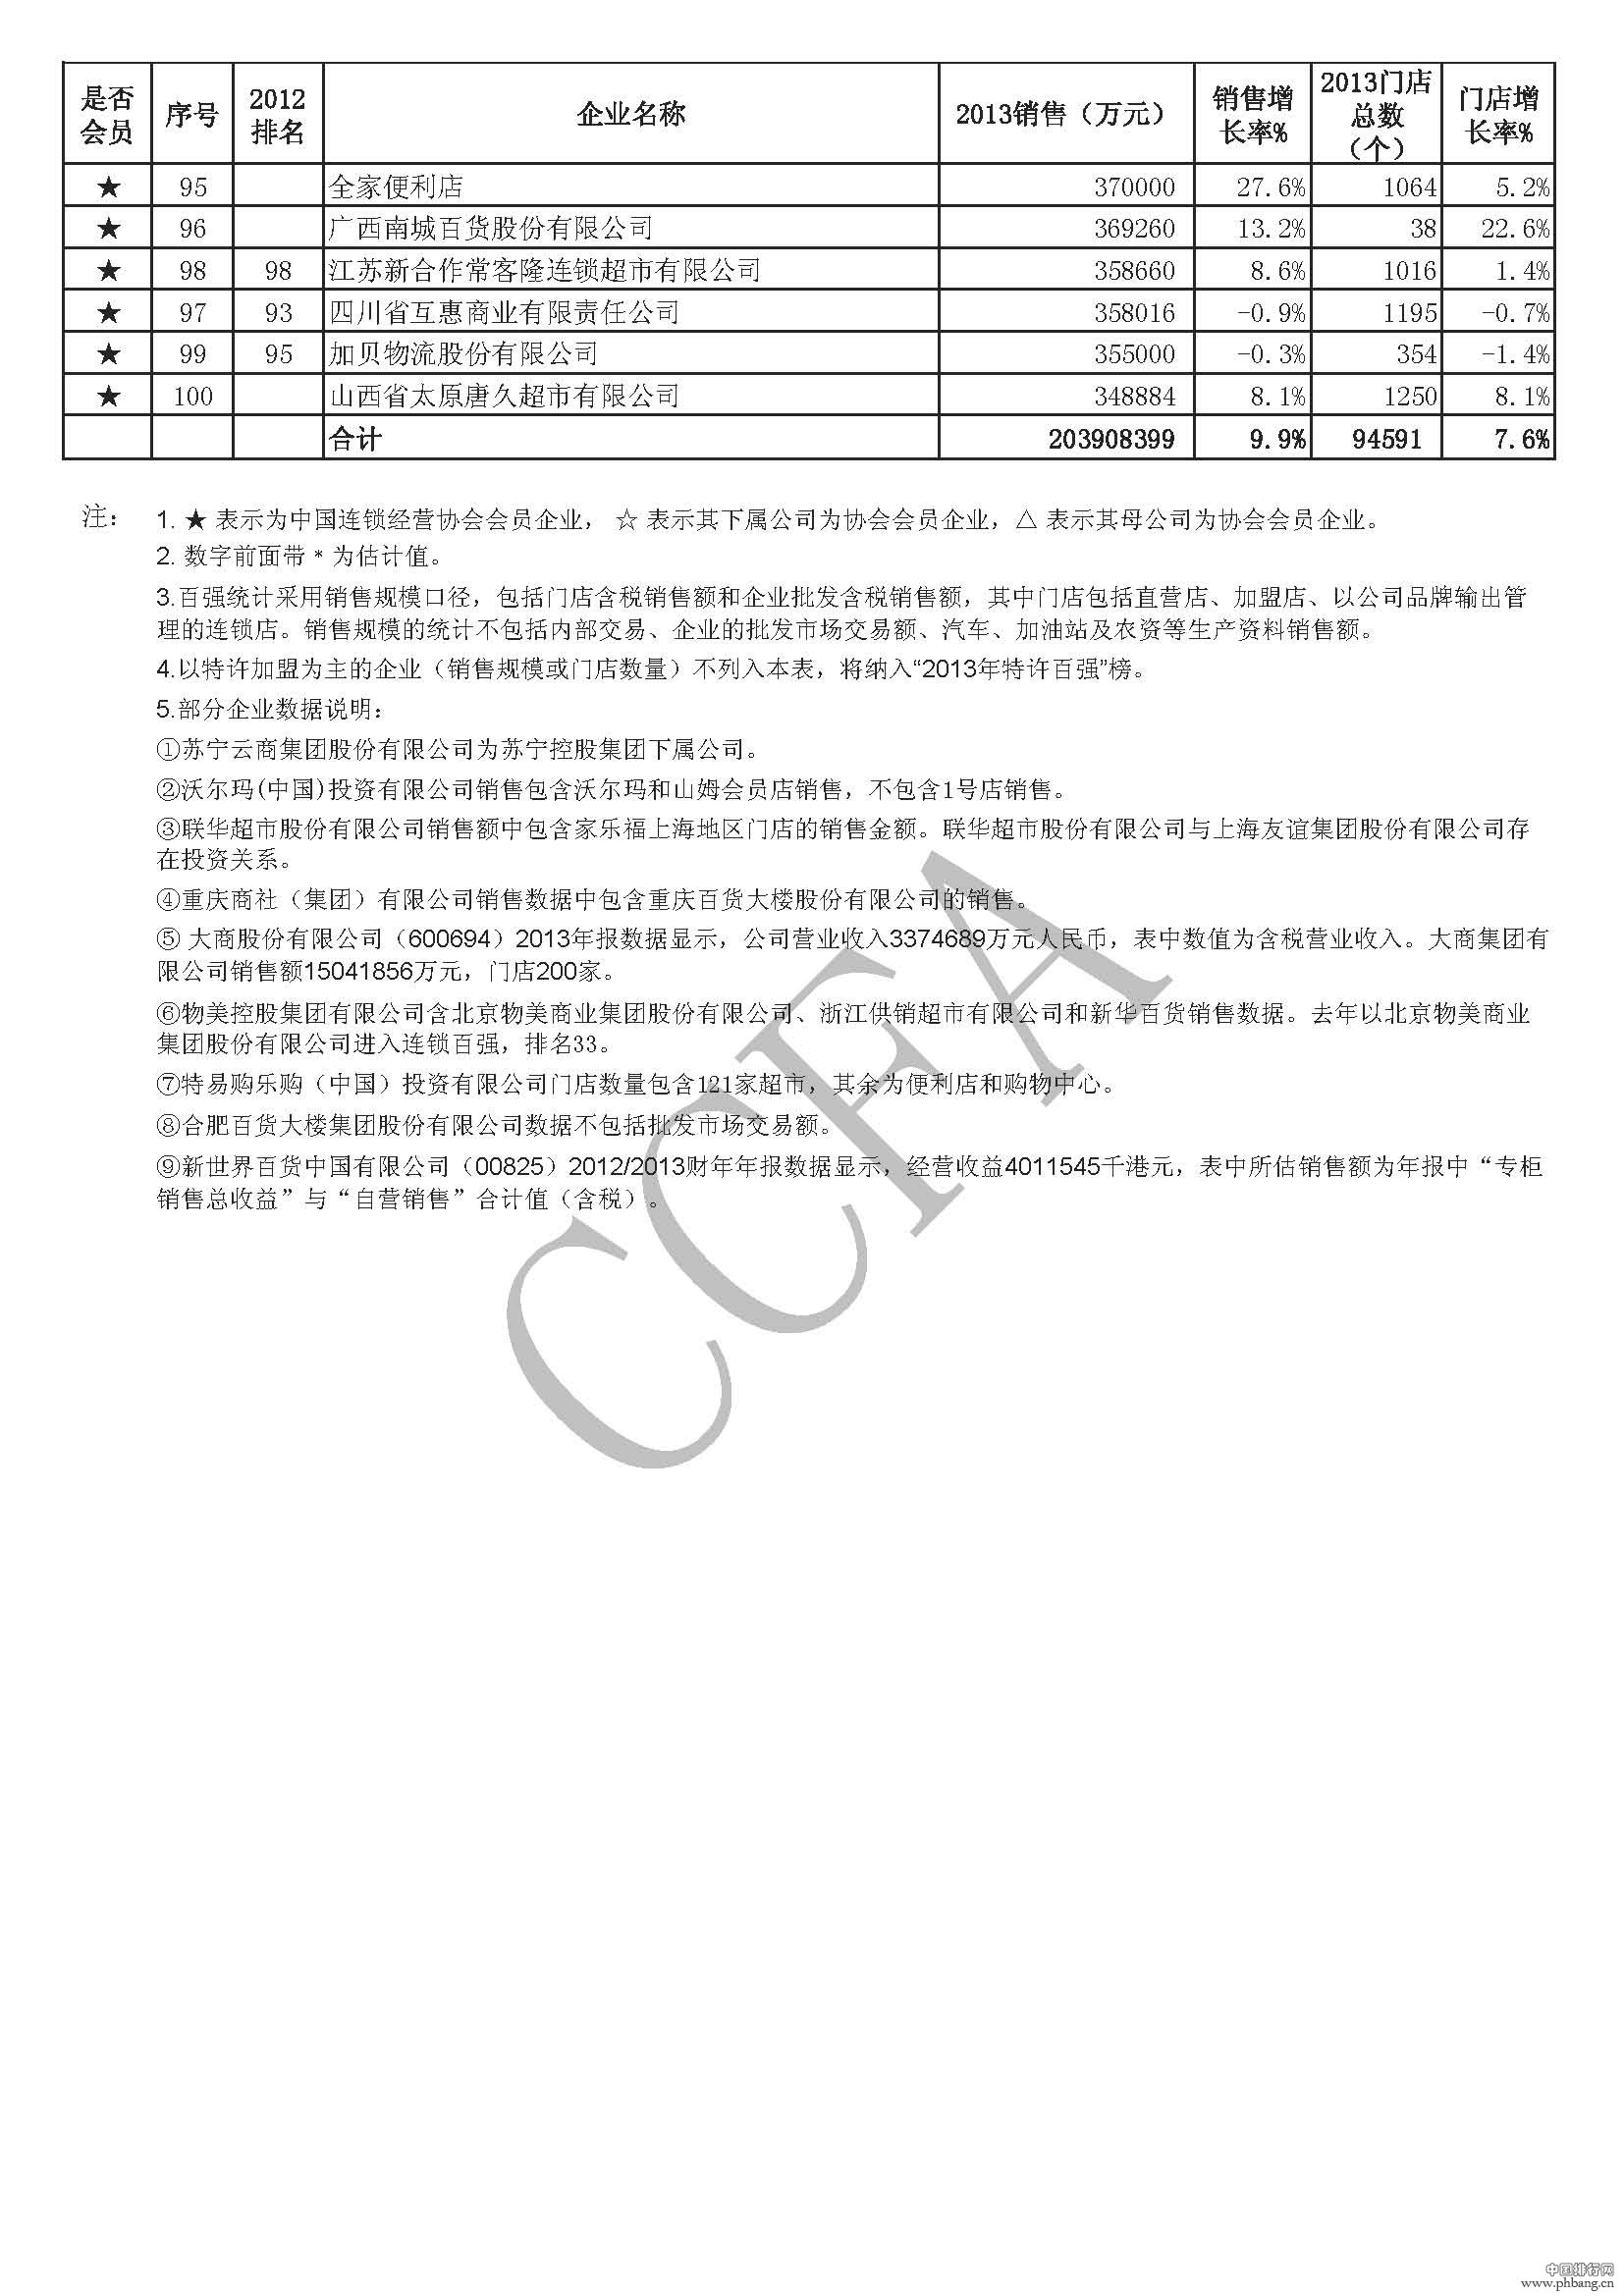 2013中国连锁企业百强榜排名